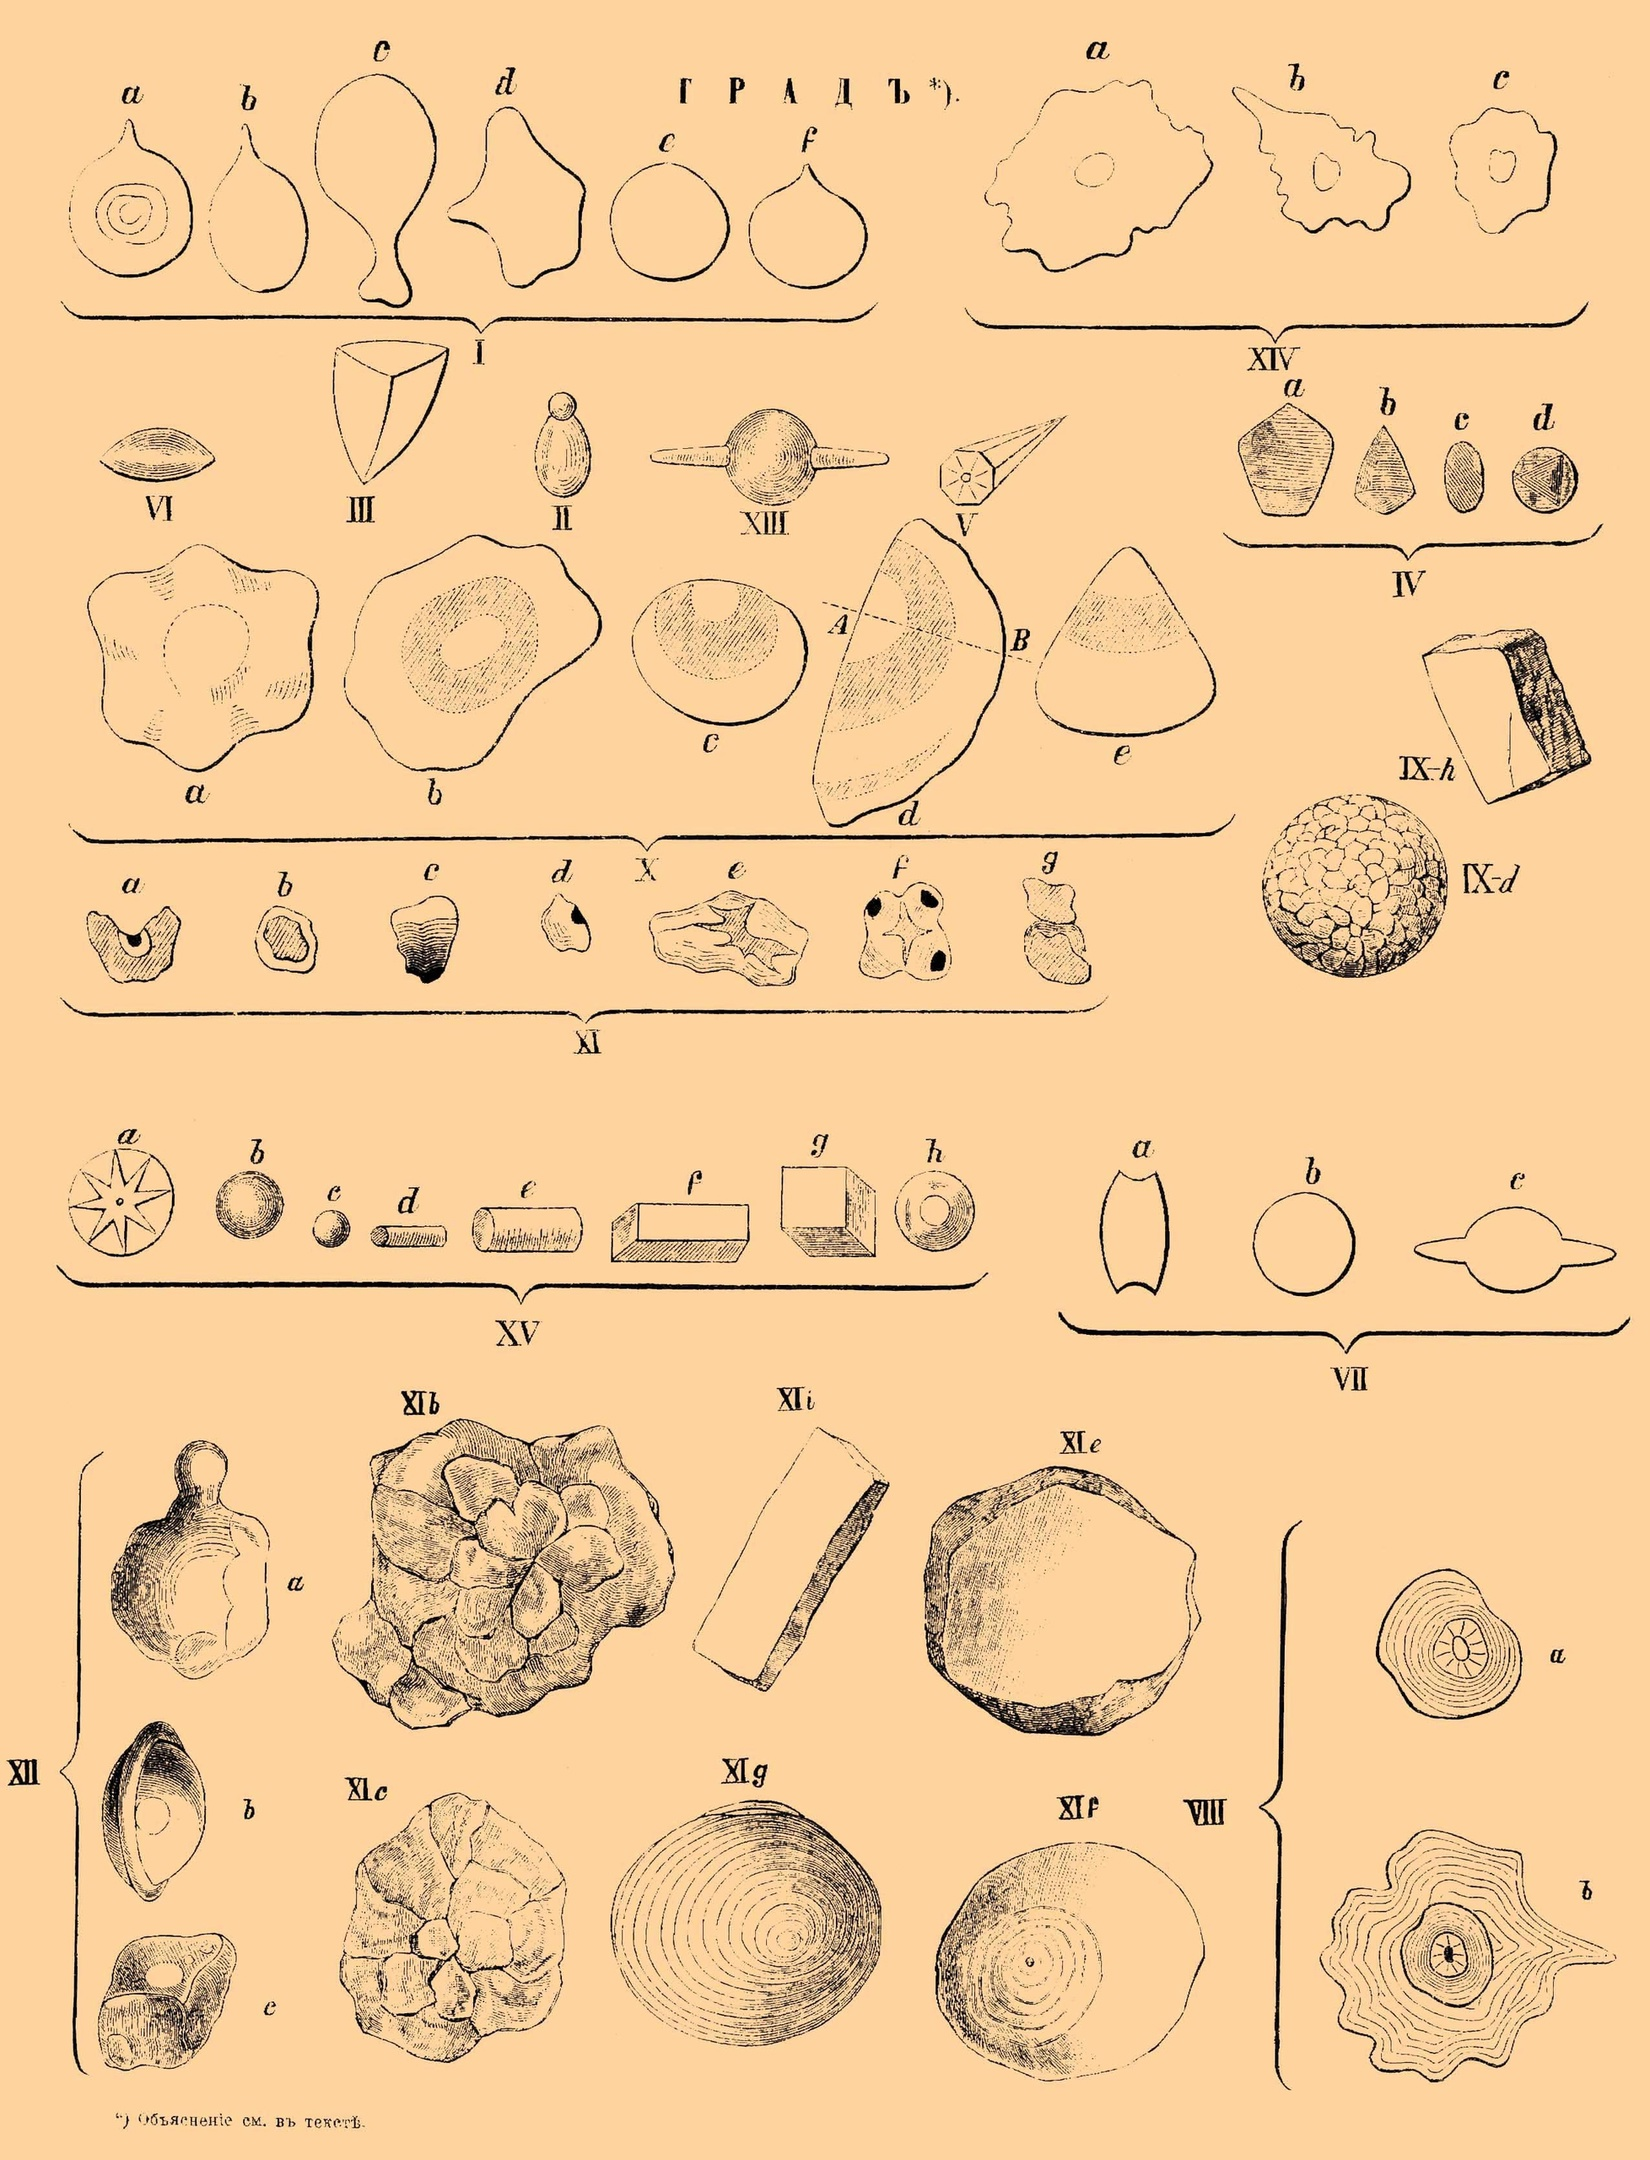 Формы градин, описанные в журнале Метеорологическое обозрение в конце XIX века